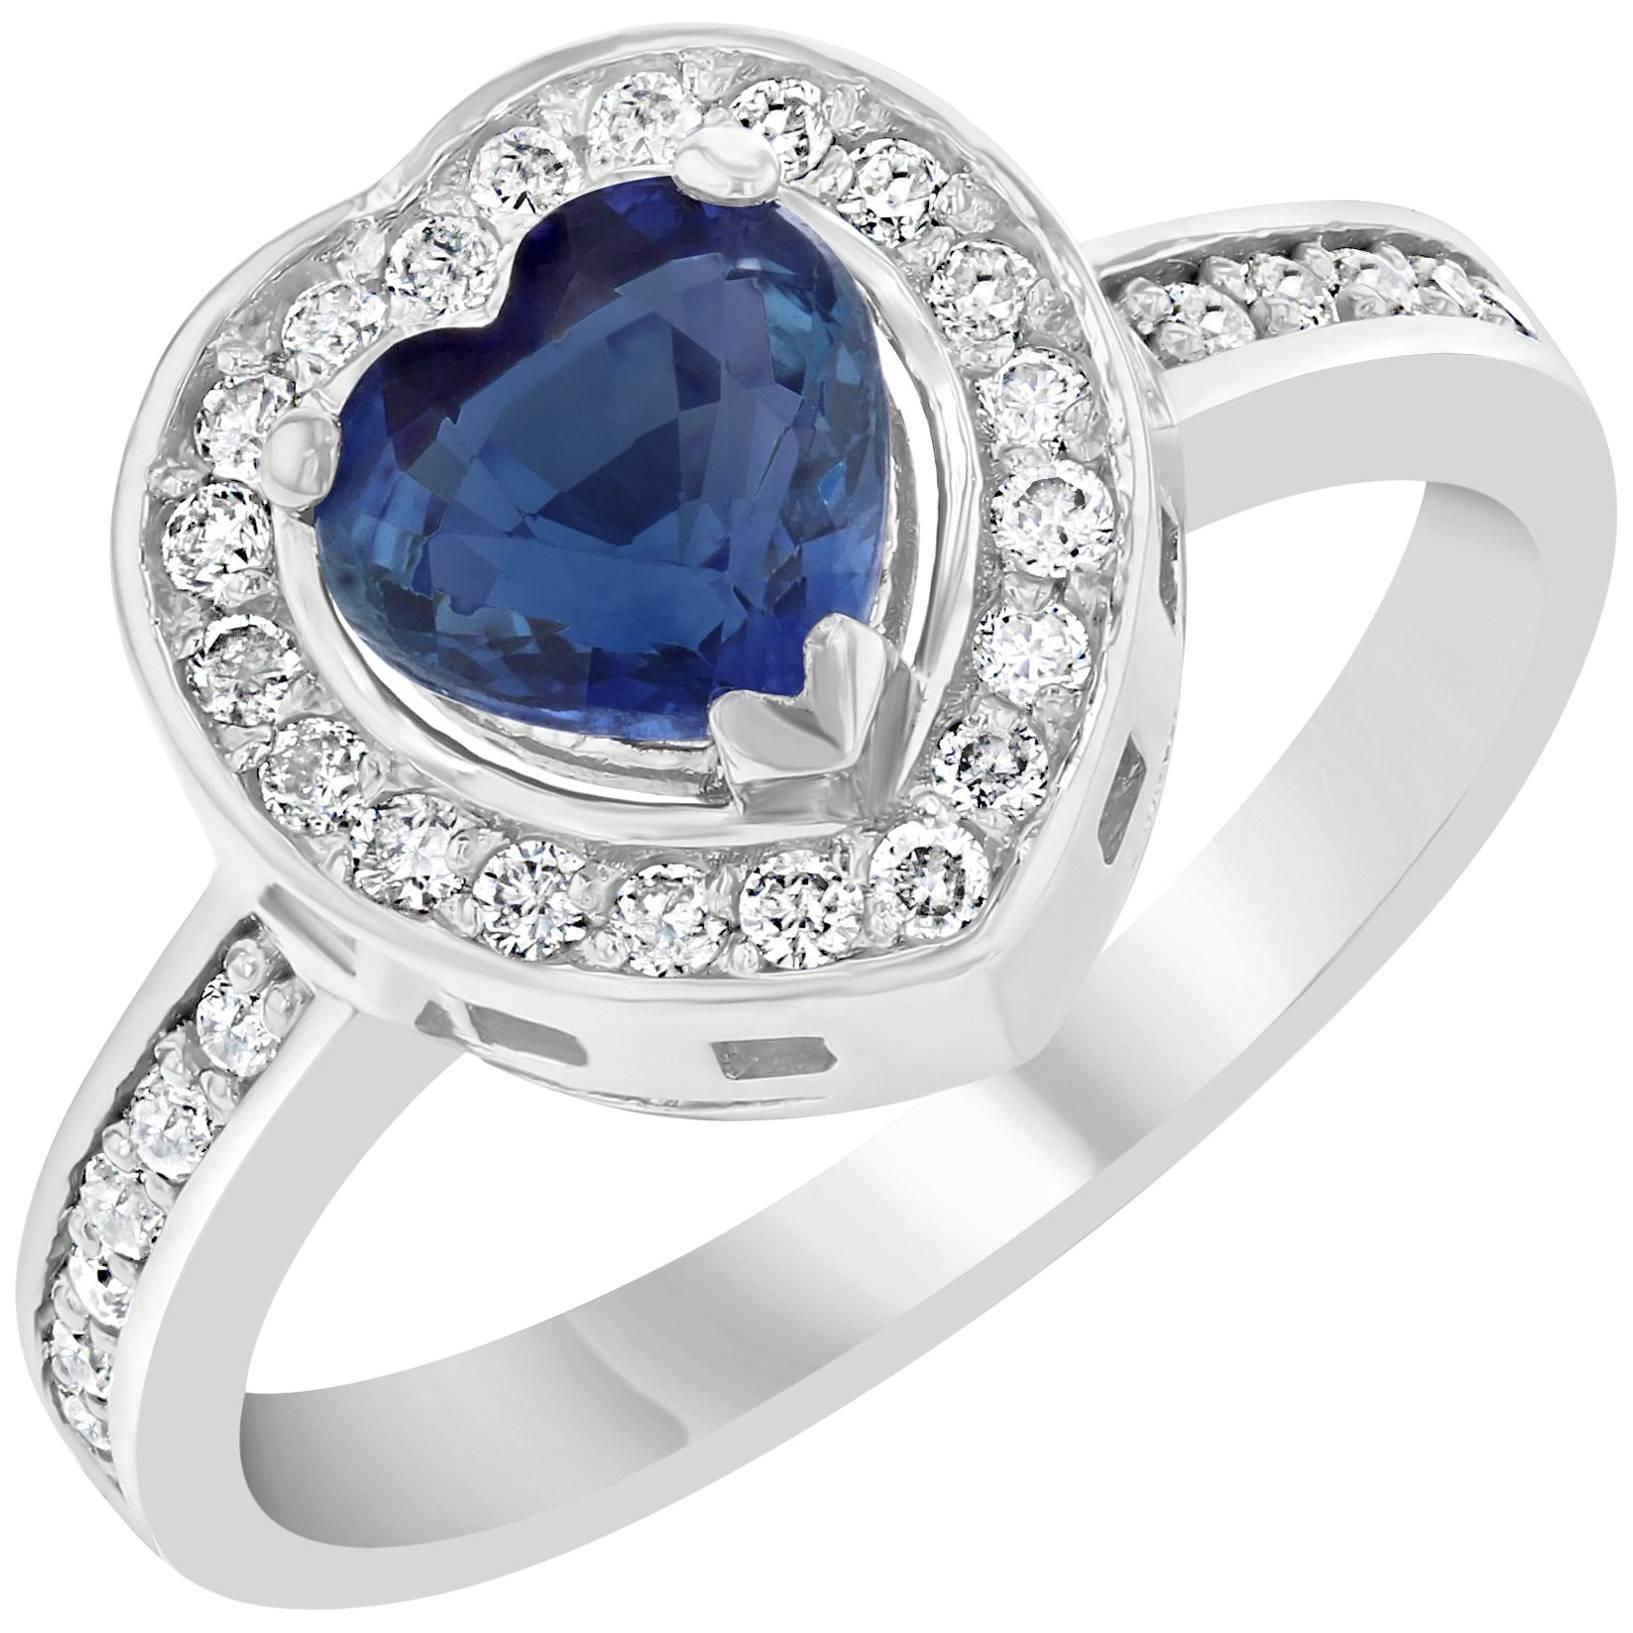 1.49 Carat Blue Sapphire Diamond Ring